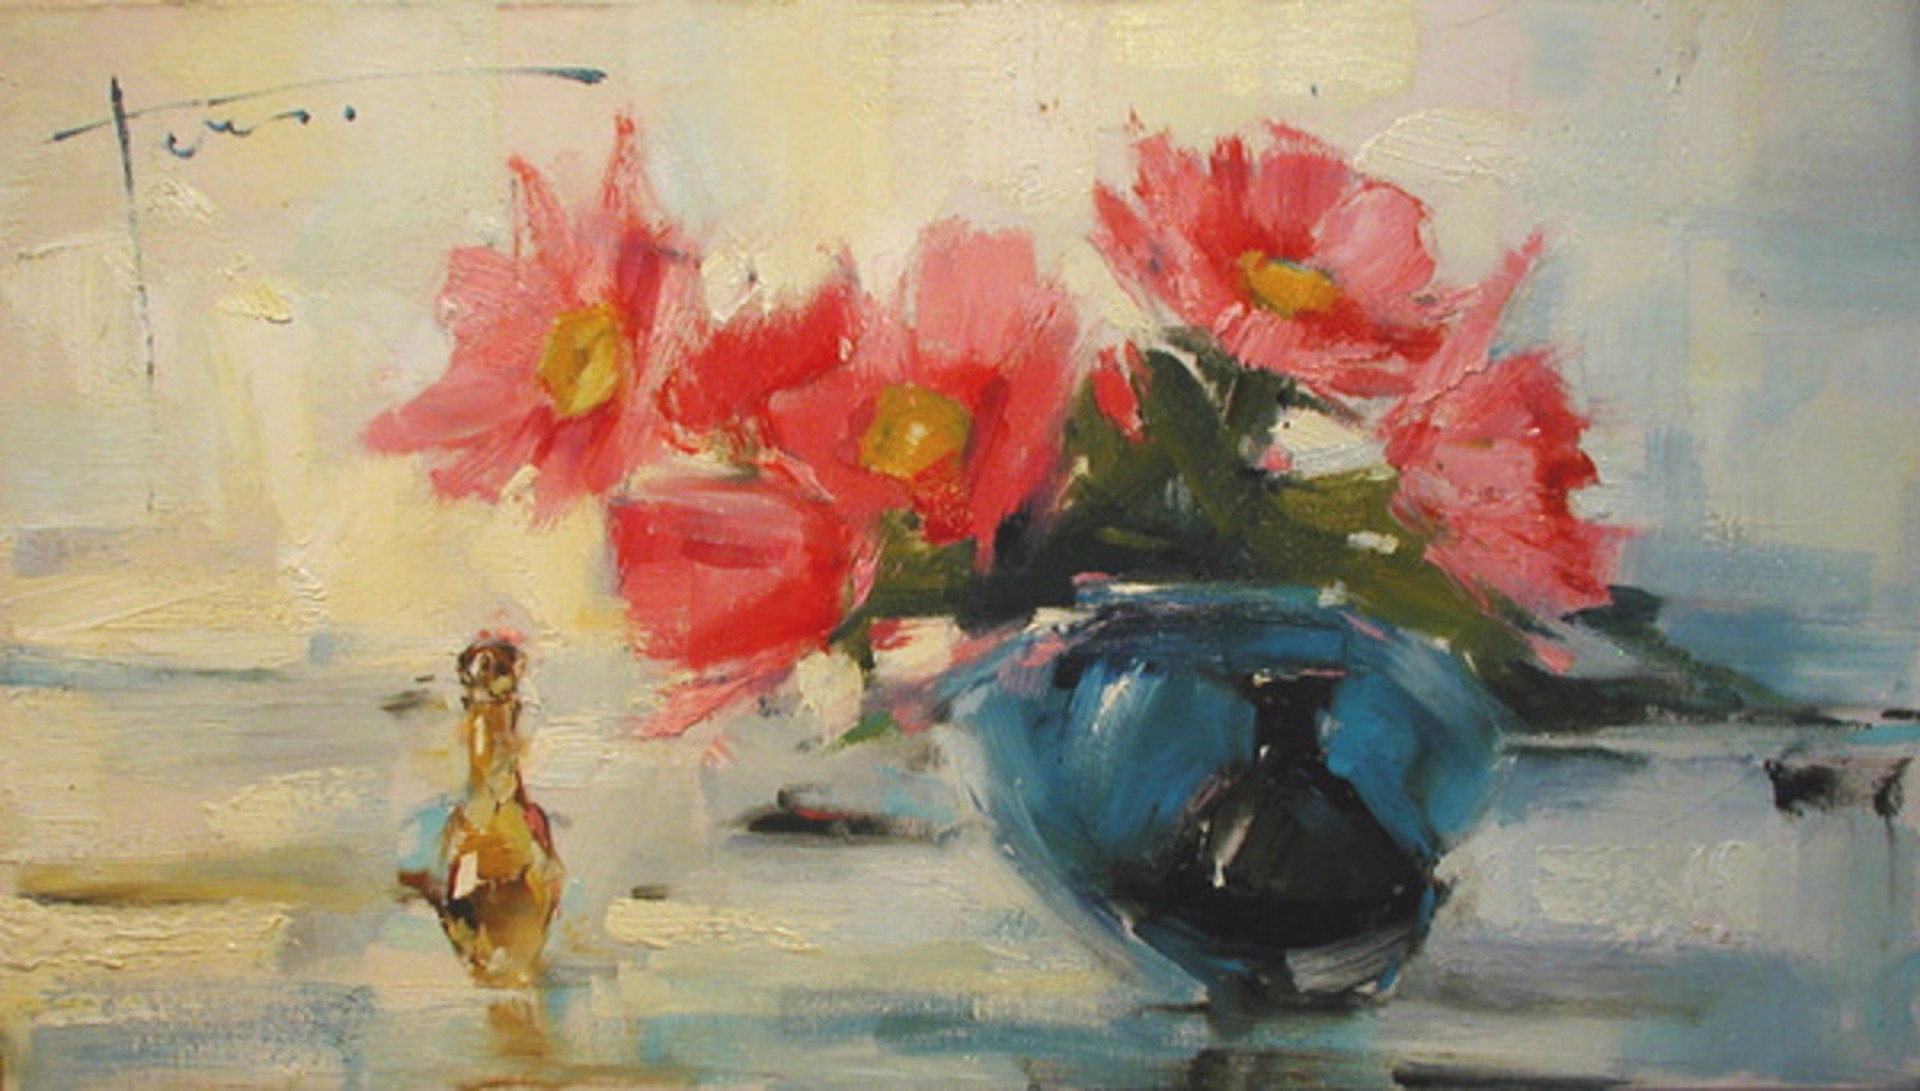 Pink Flowers with Vases by Yana Golubyatnikova